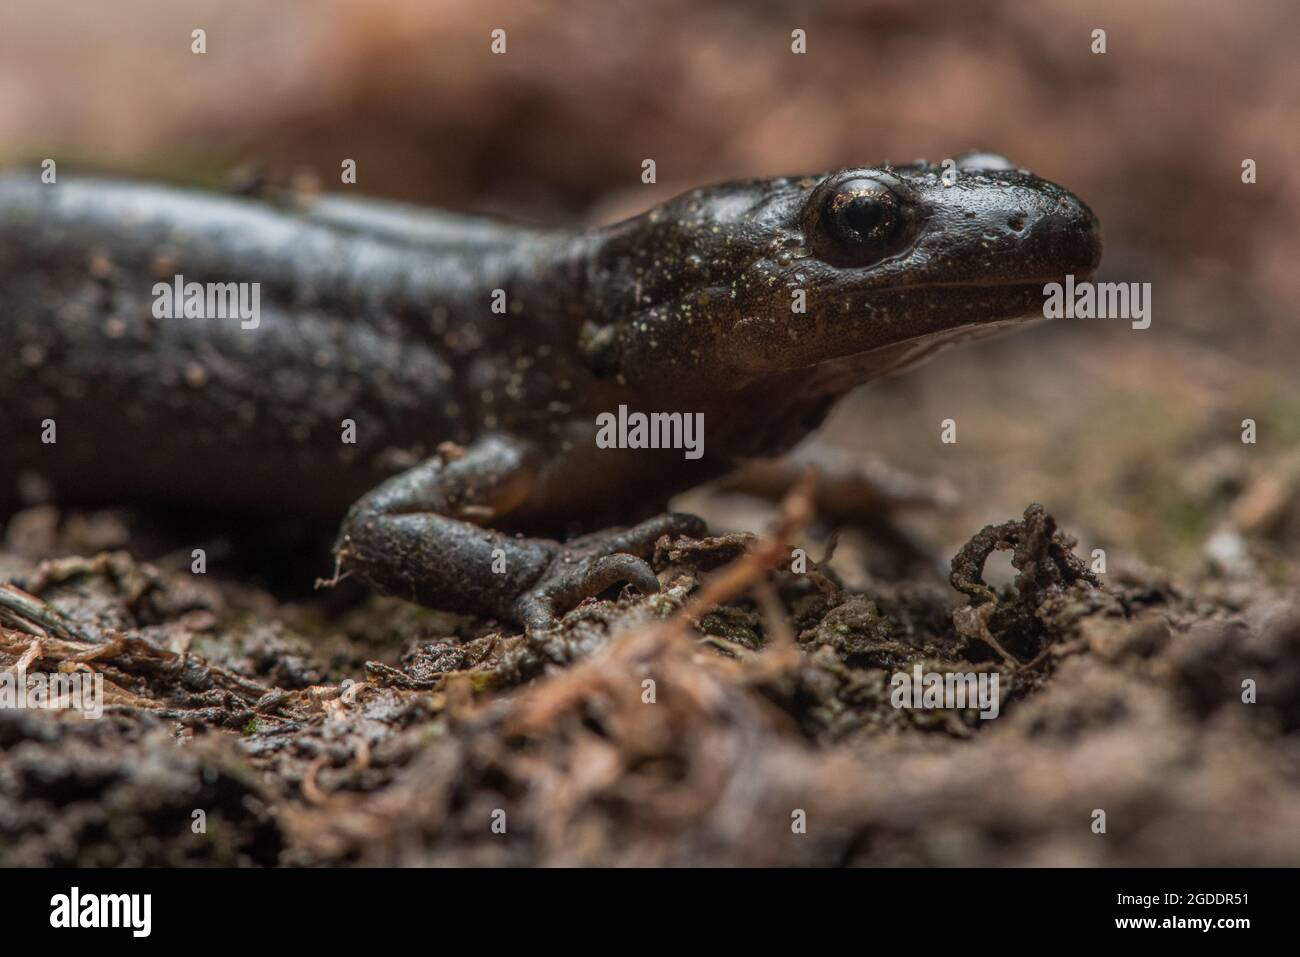 Santa Cruz Salamander dai piedi lunghi (Ambystoma macrodactylum croceum) una sottospecie in via di estinzione che si trova solo in una piccola area della costa californiana. Foto Stock